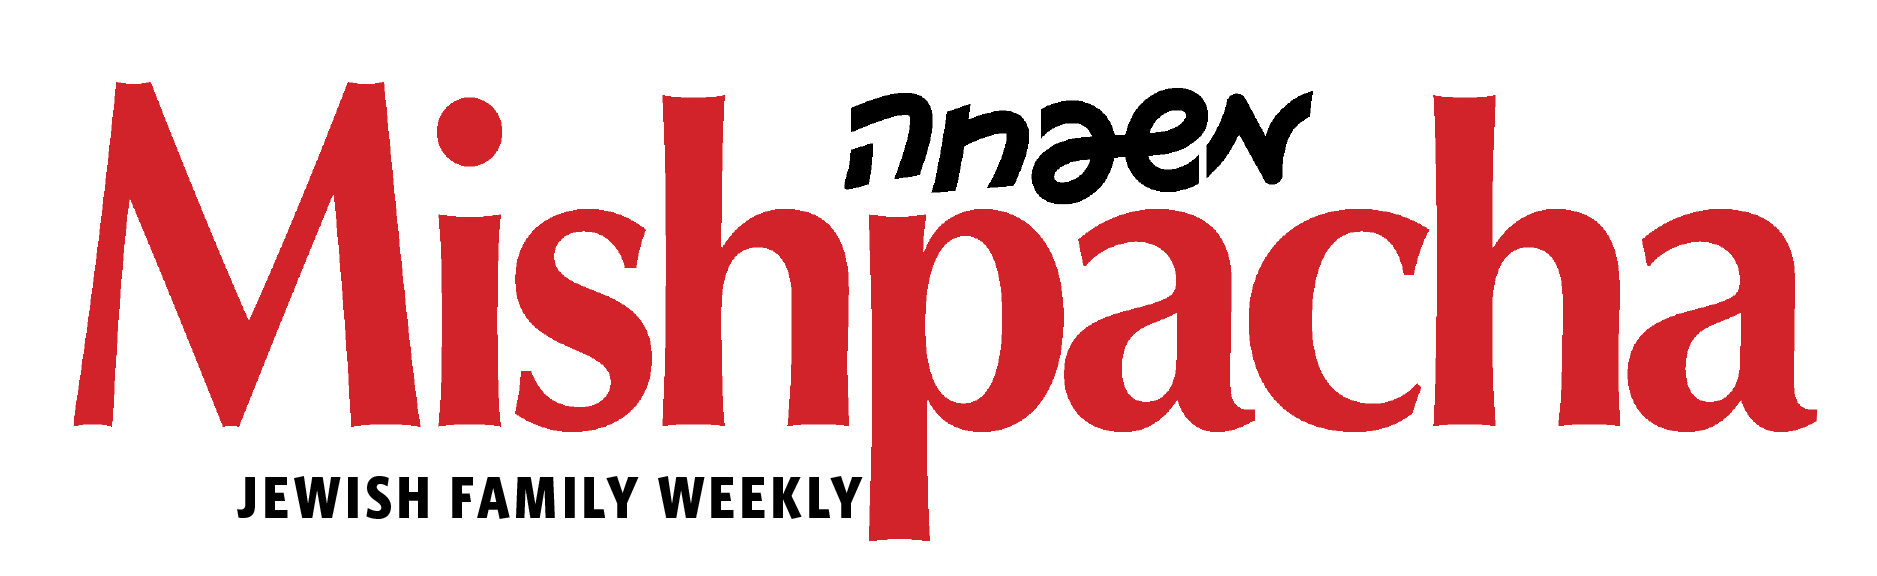 Mishpacha magazine